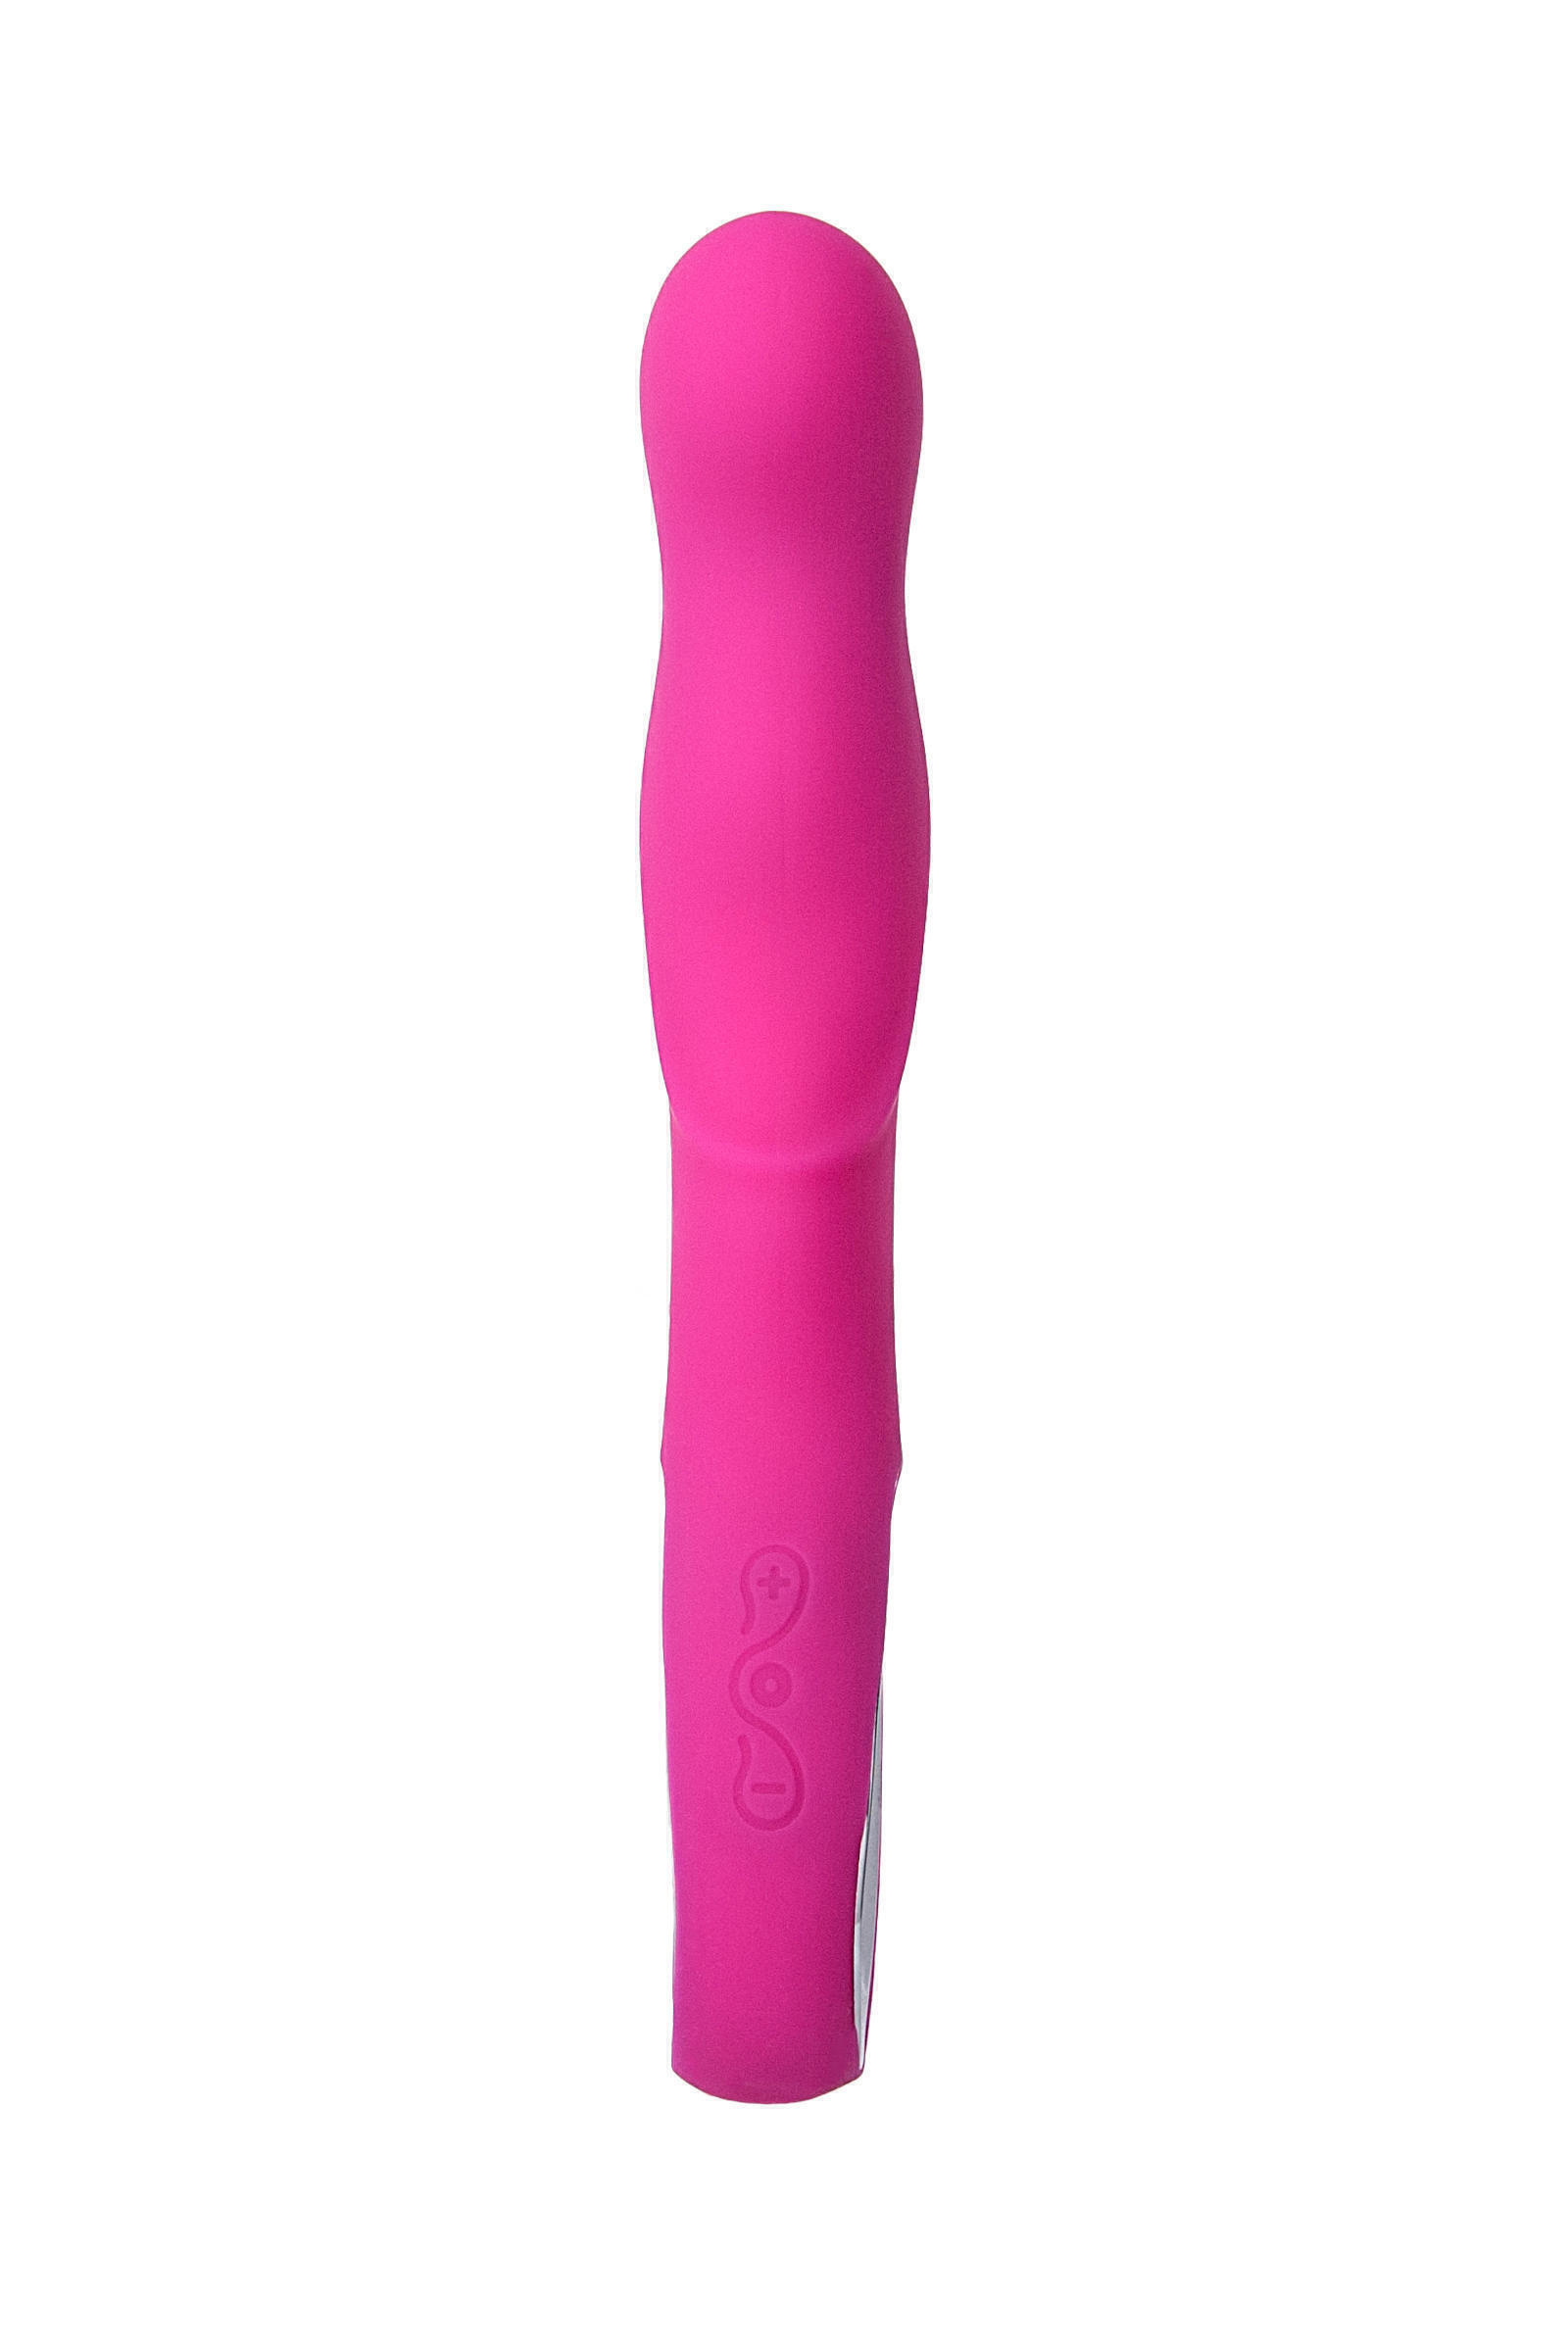 Стимулятор точки G JOS AVE, анатомическая форма, розовый, 21 см